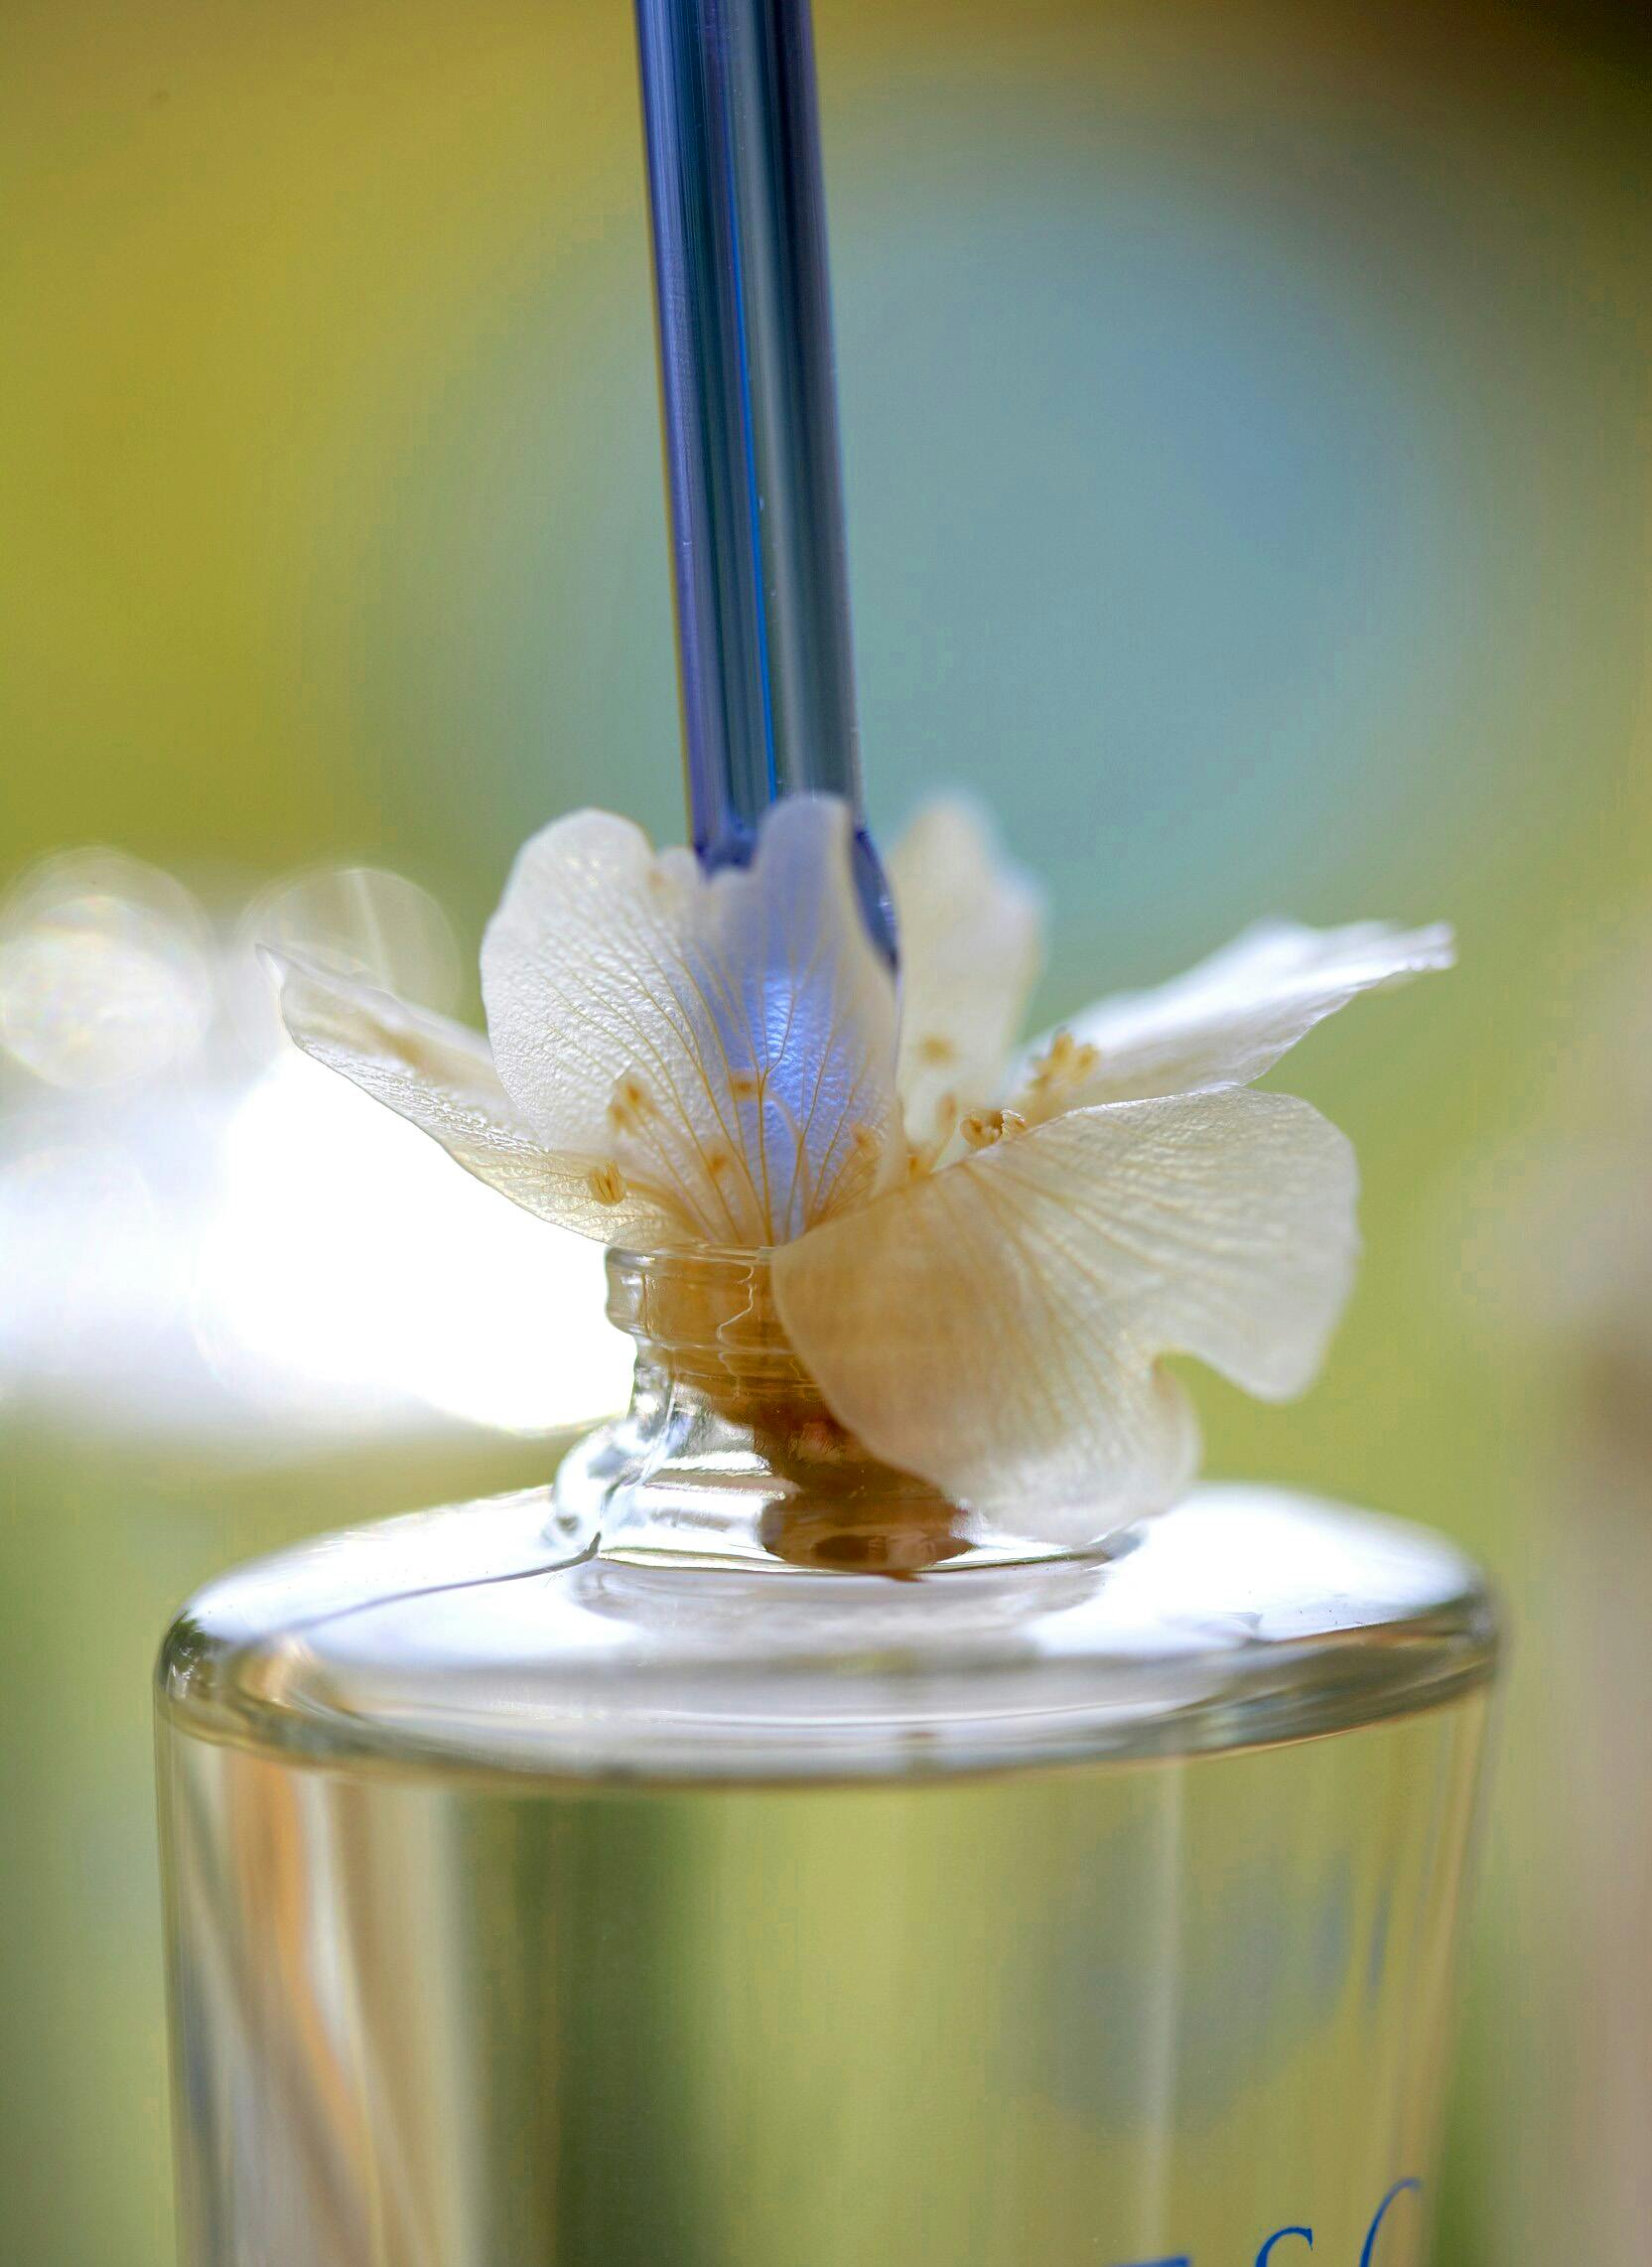 Introducció de la flor dins del flascó de perfum